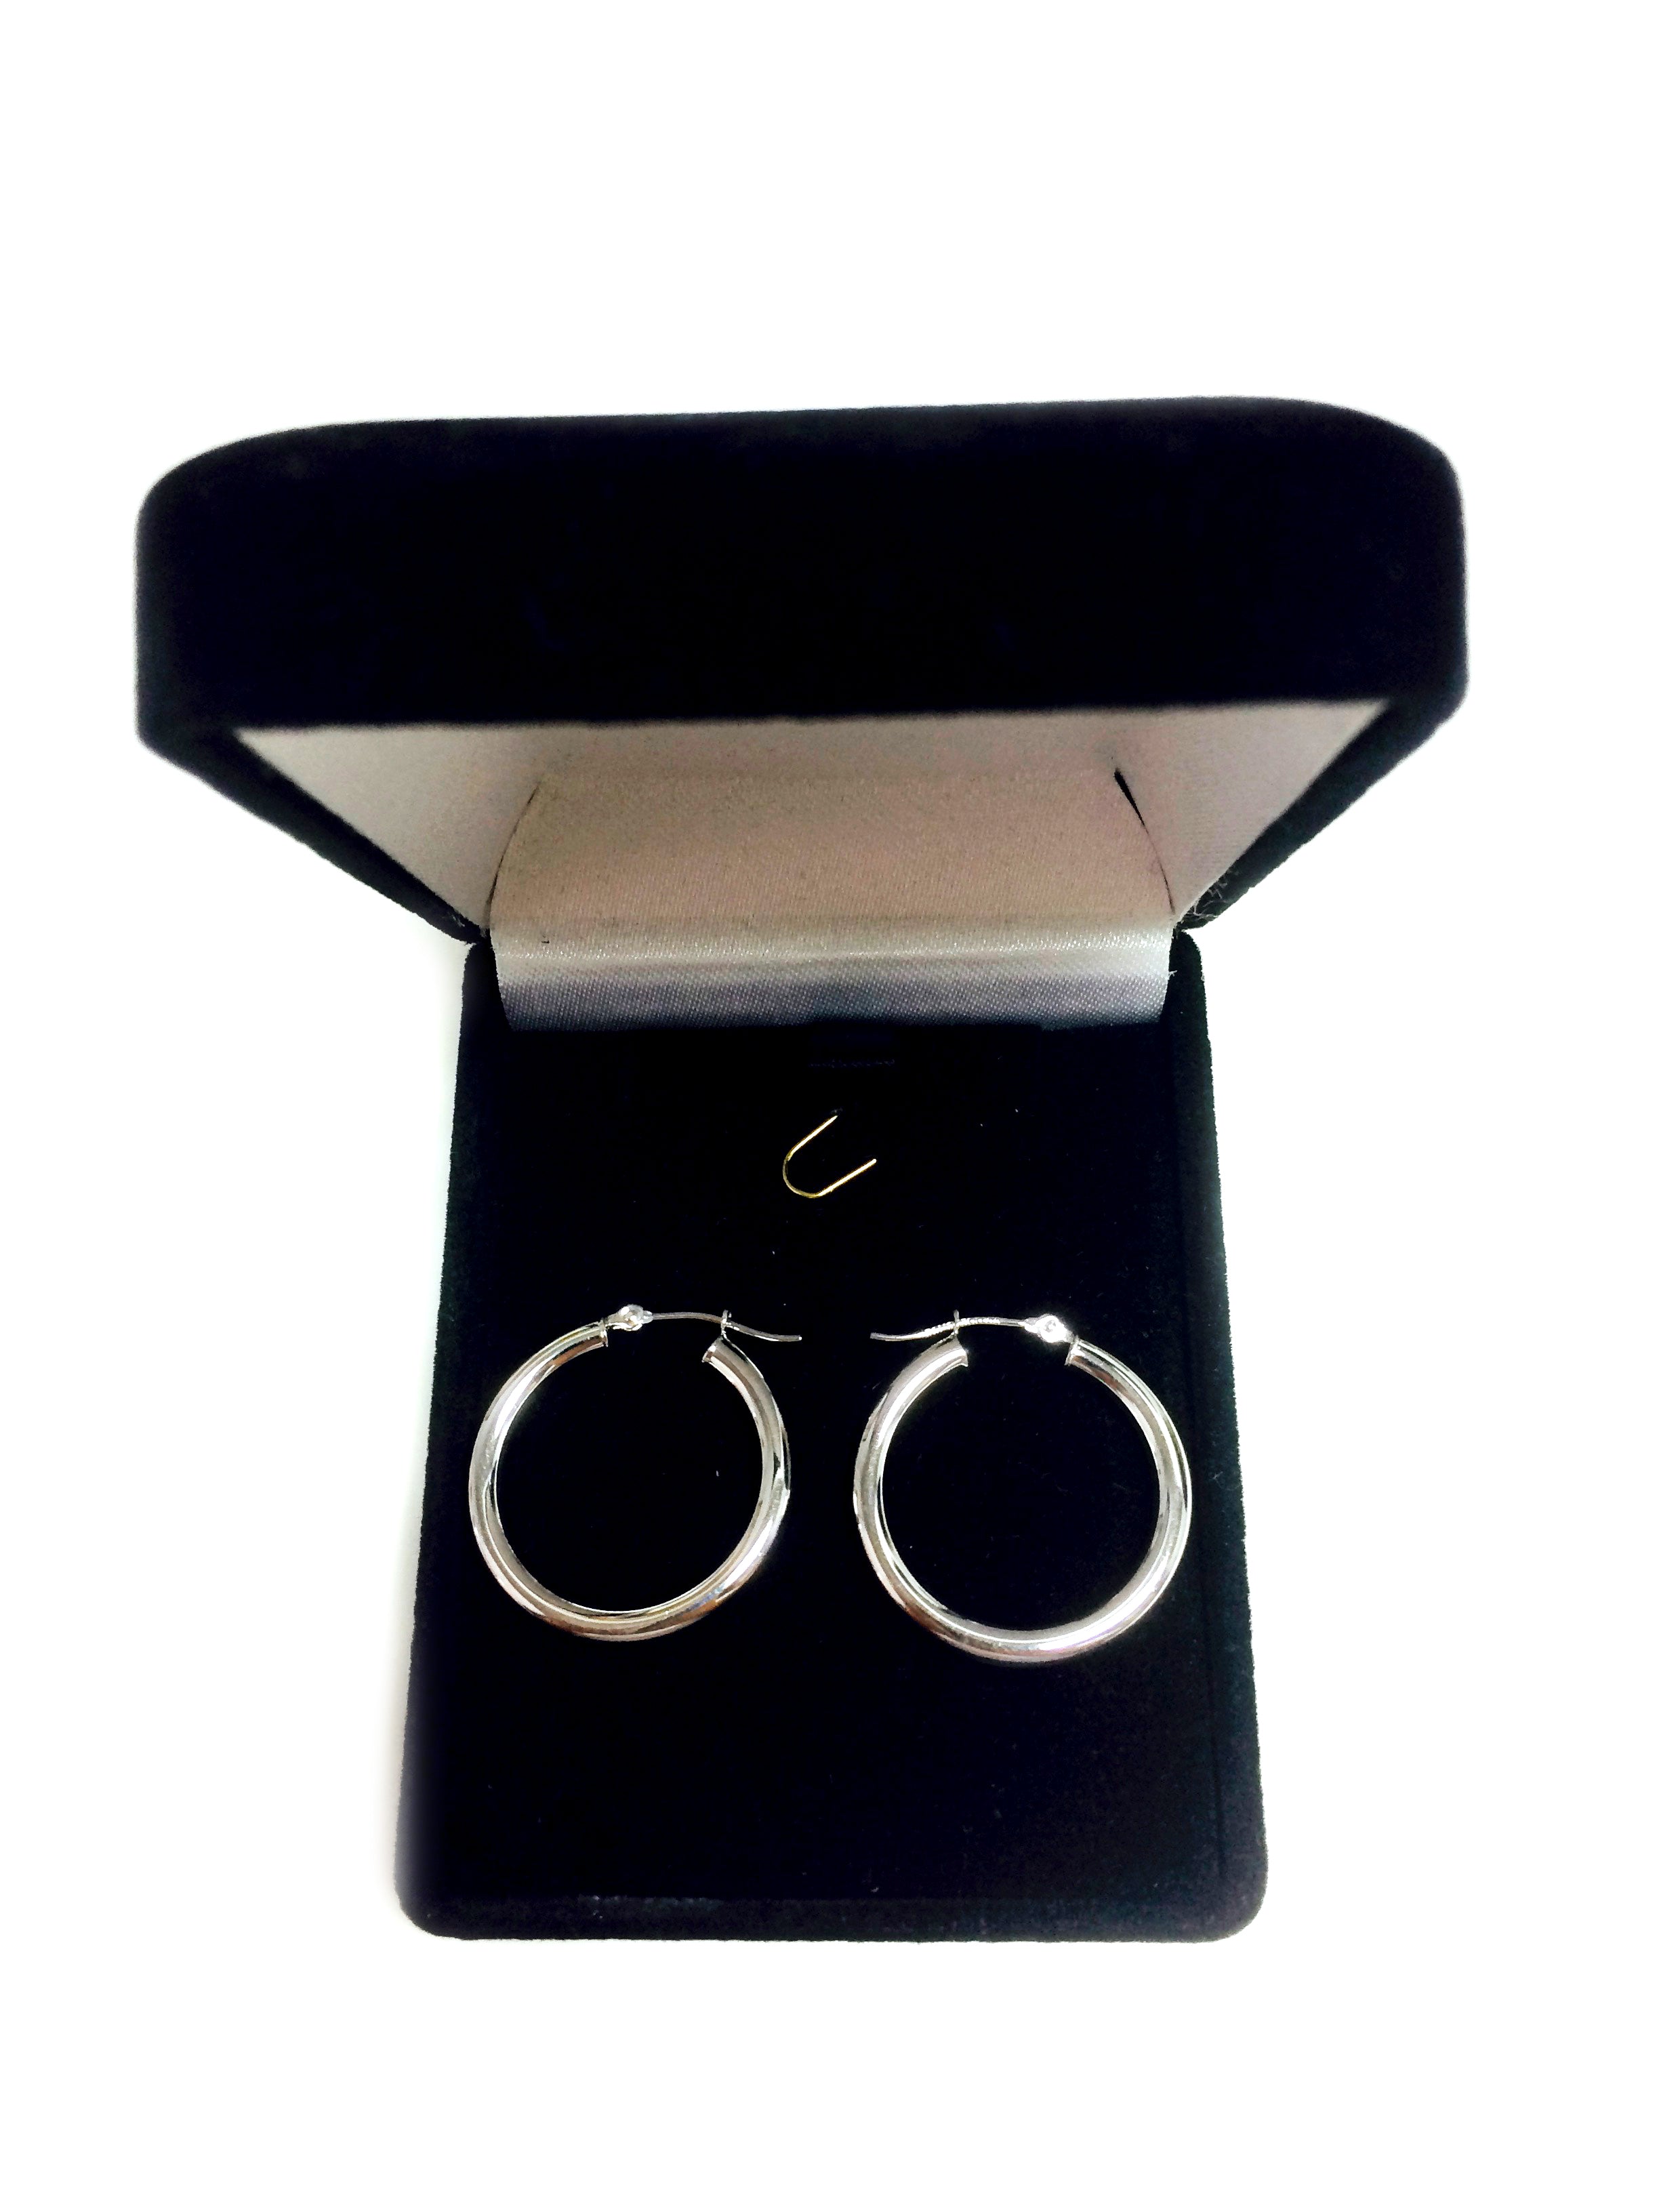 10k White Gold 3mm Shiny Round Tube Hoop Earrings fine designer jewelry for men and women